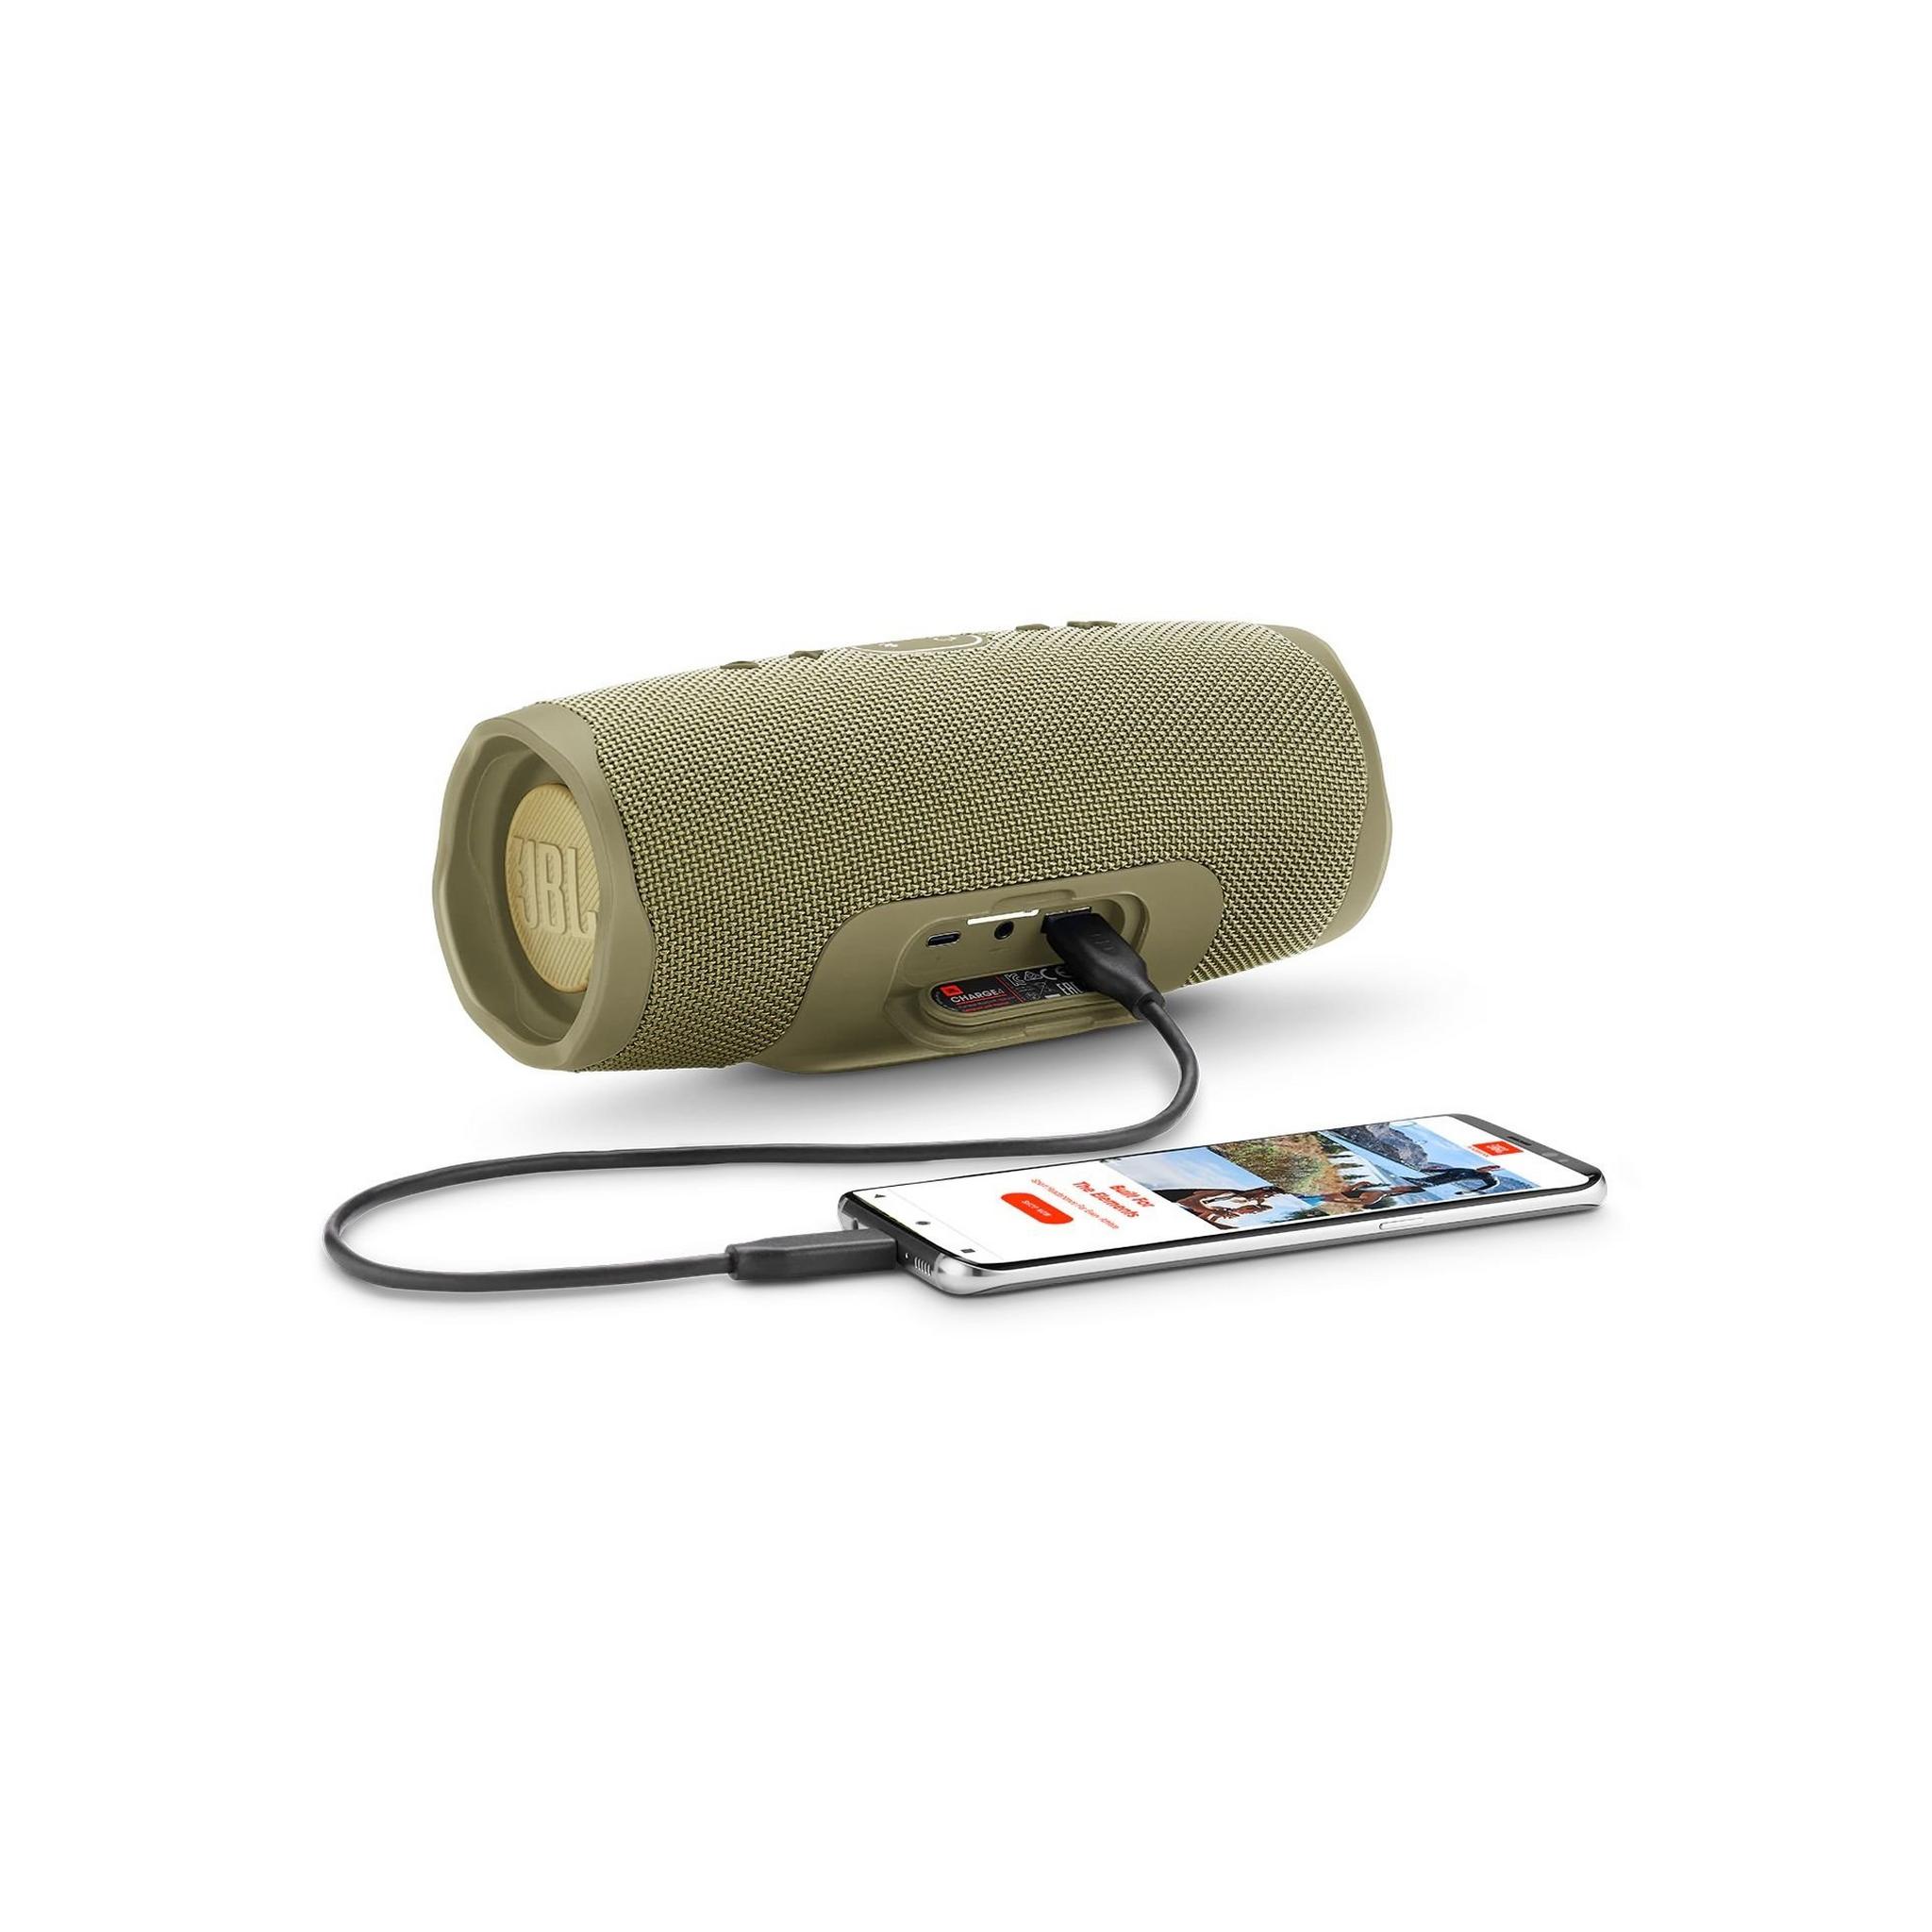 JBL Charge 4 Waterproof Portable Bluetooth Speaker - Sand